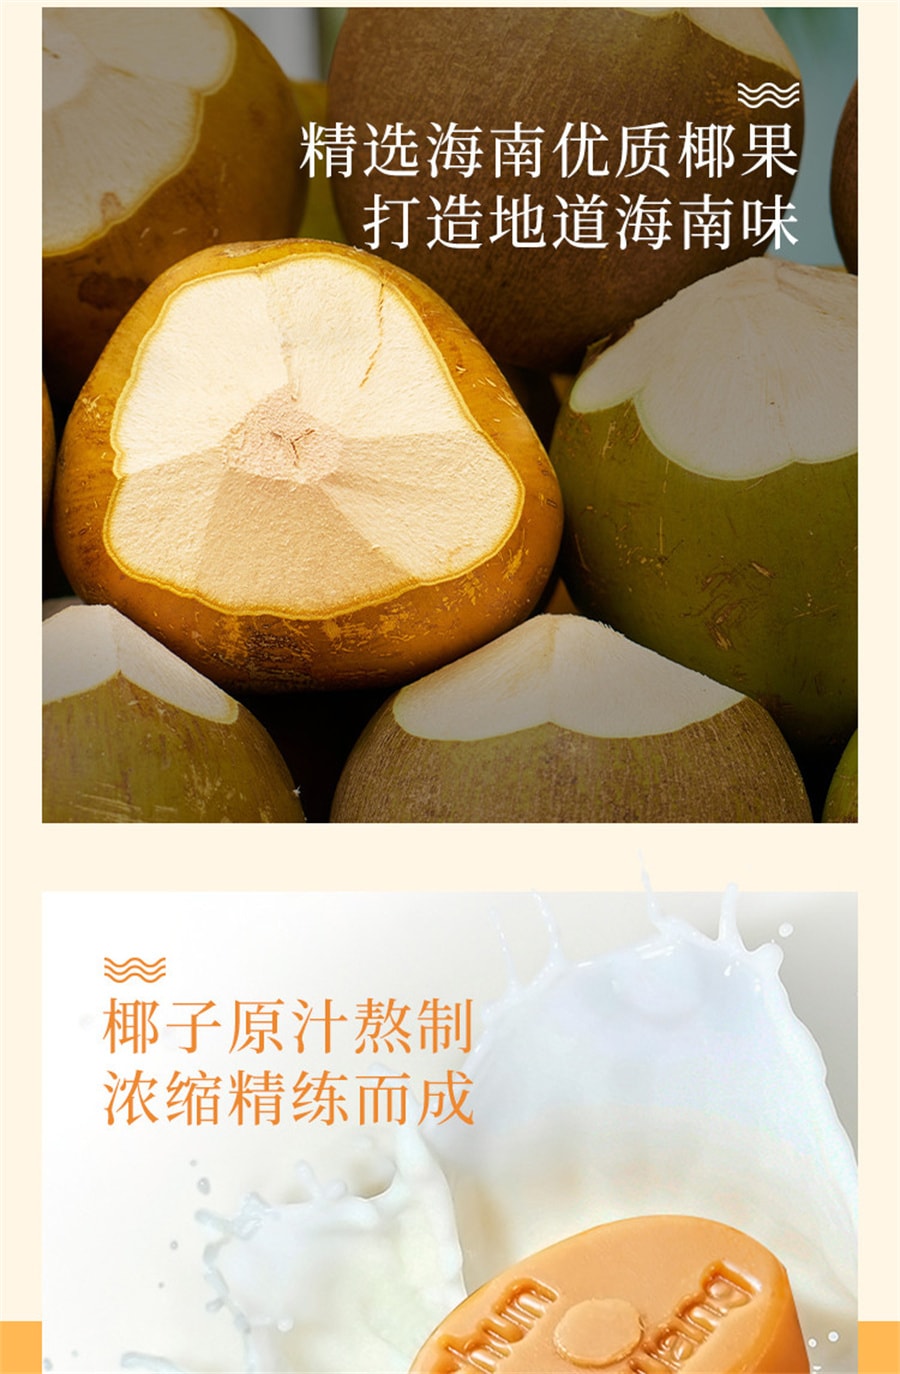 【中国直邮】春光 食品海南特产零食年货糖果特制椰子糖东郊椰林椰子原汁 60克